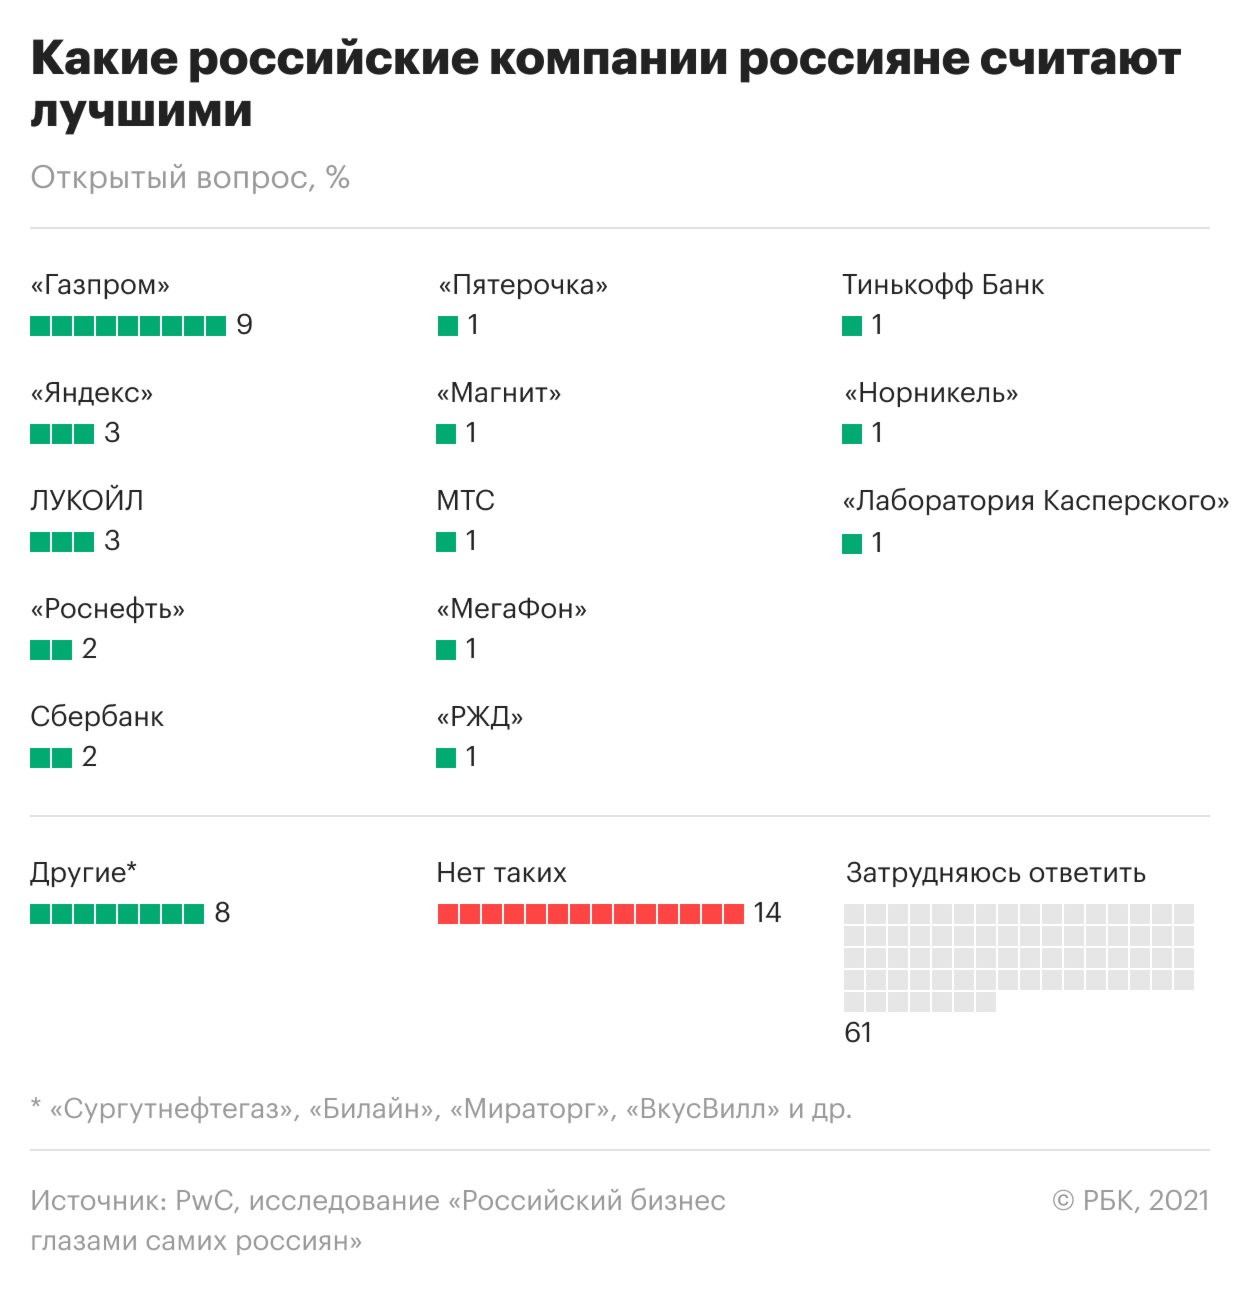 Большинство россиян высказались за усиление регулирования бизнеса